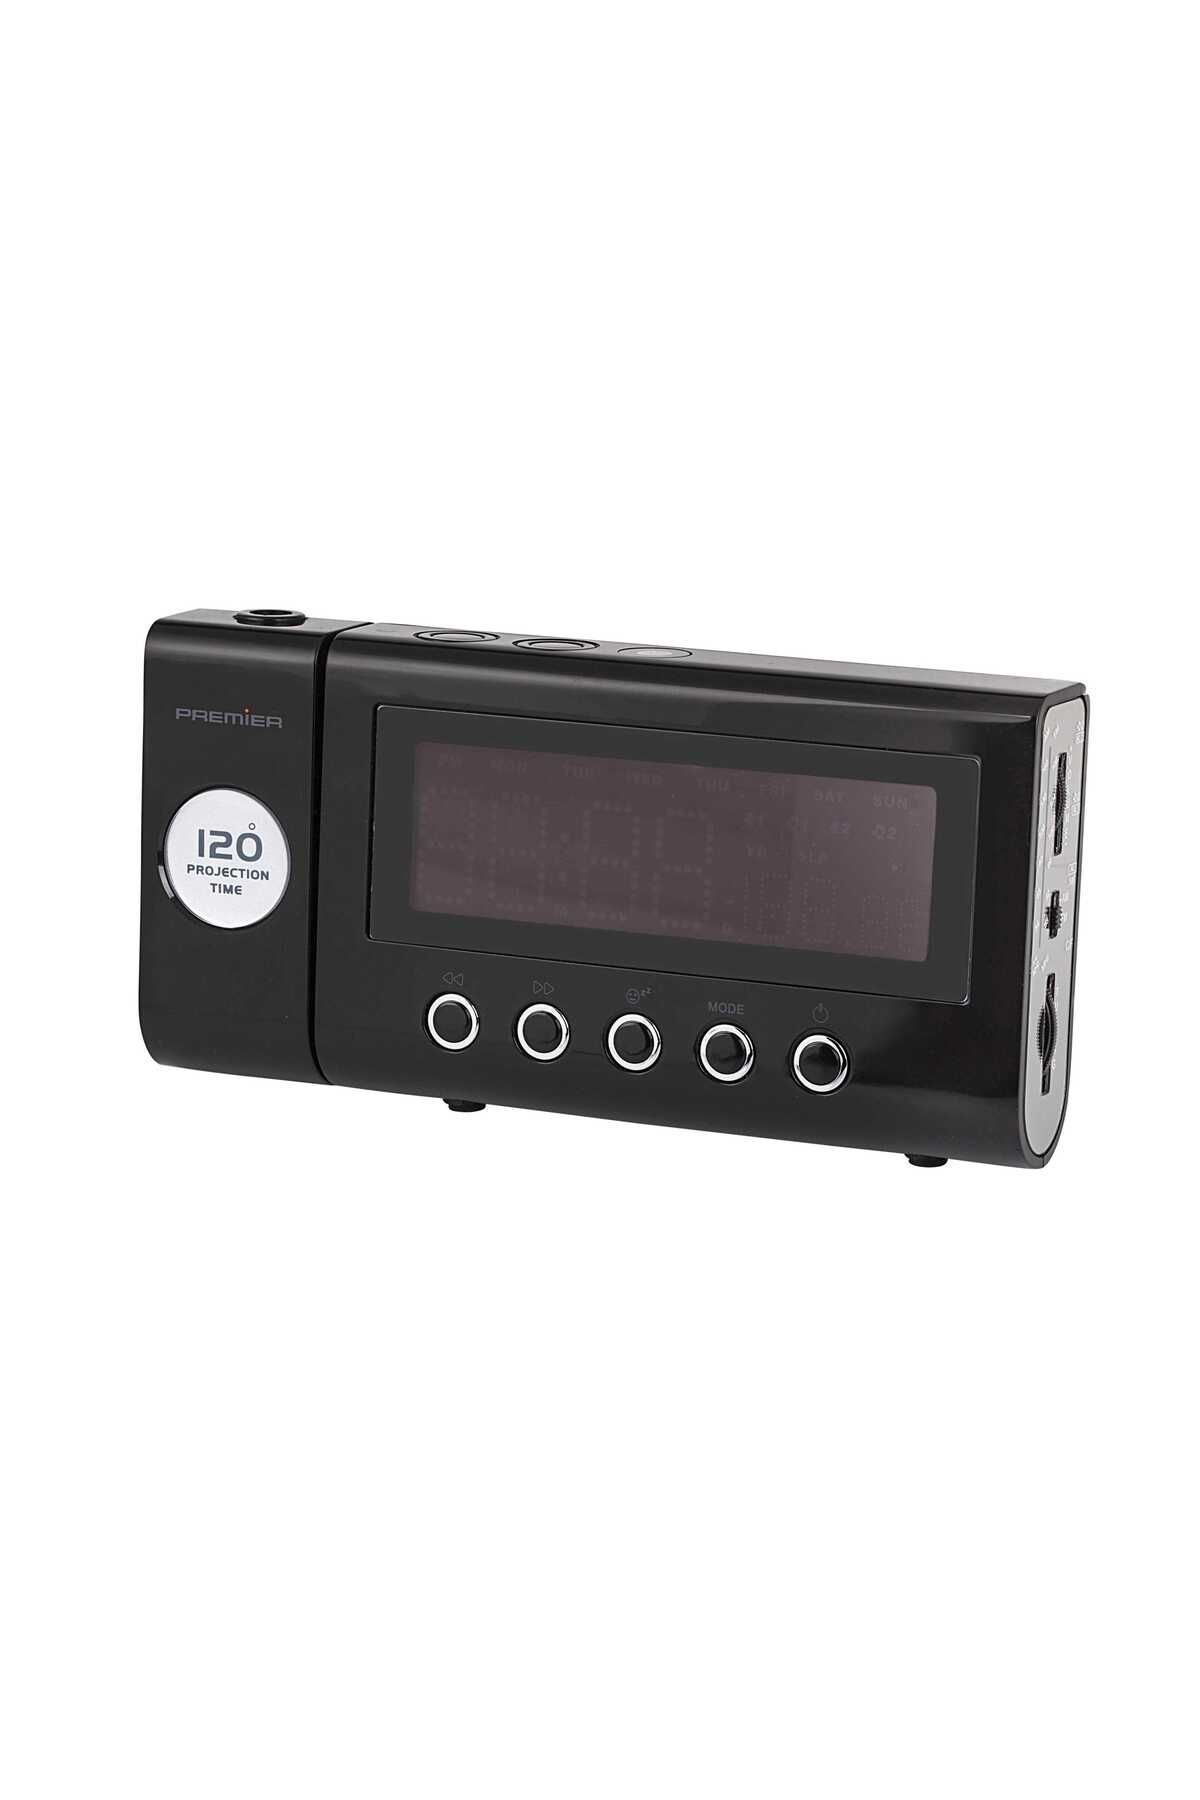 PREMIER Prc 98 Led Göstergeli Projektörlü Alarmlı Saatli Radyo